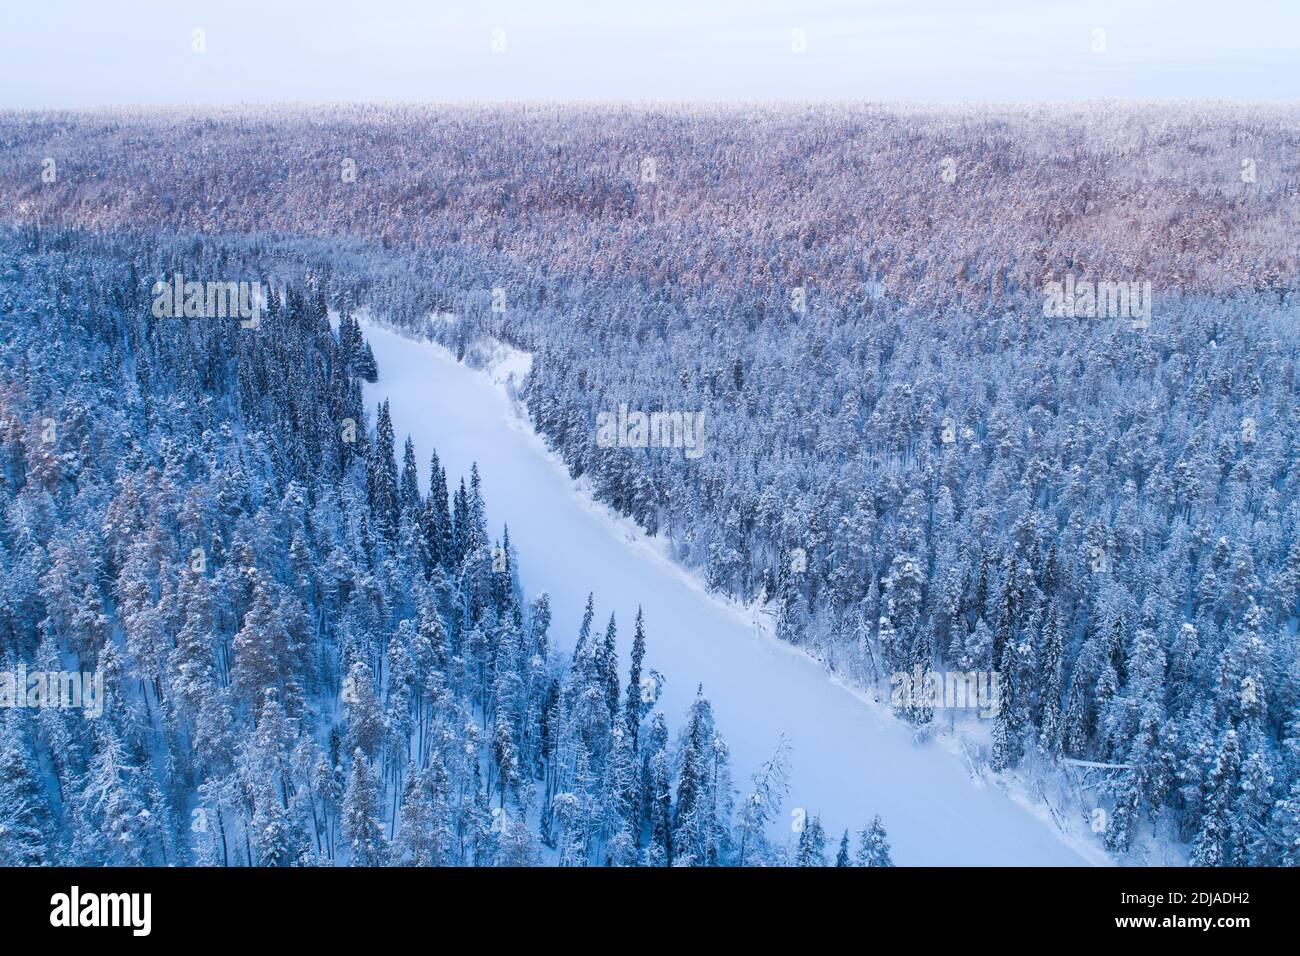 Vallée fluviale couverte de neige et de glace entourée d'une forêt de taïga hivernante dans le parc national d'Oulanka, nature finlandaise. Banque D'Images